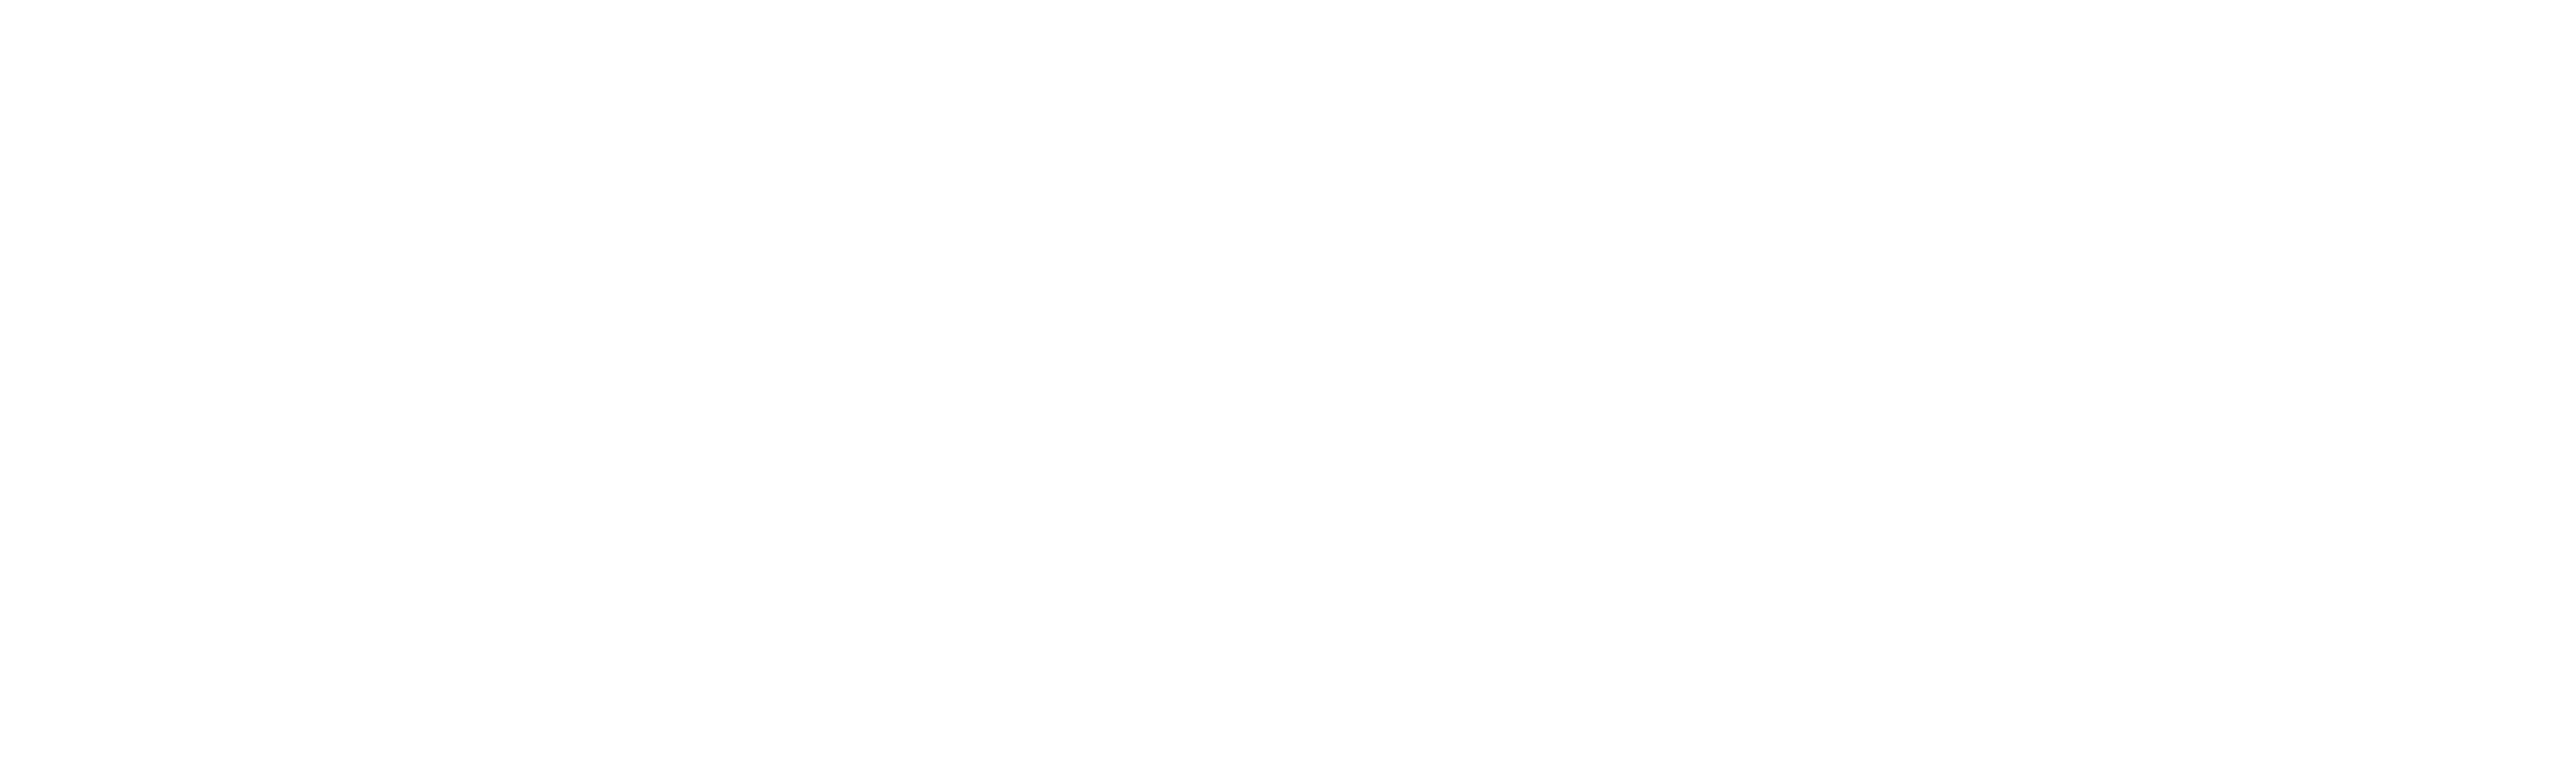 Arthrex_Logo_white.png